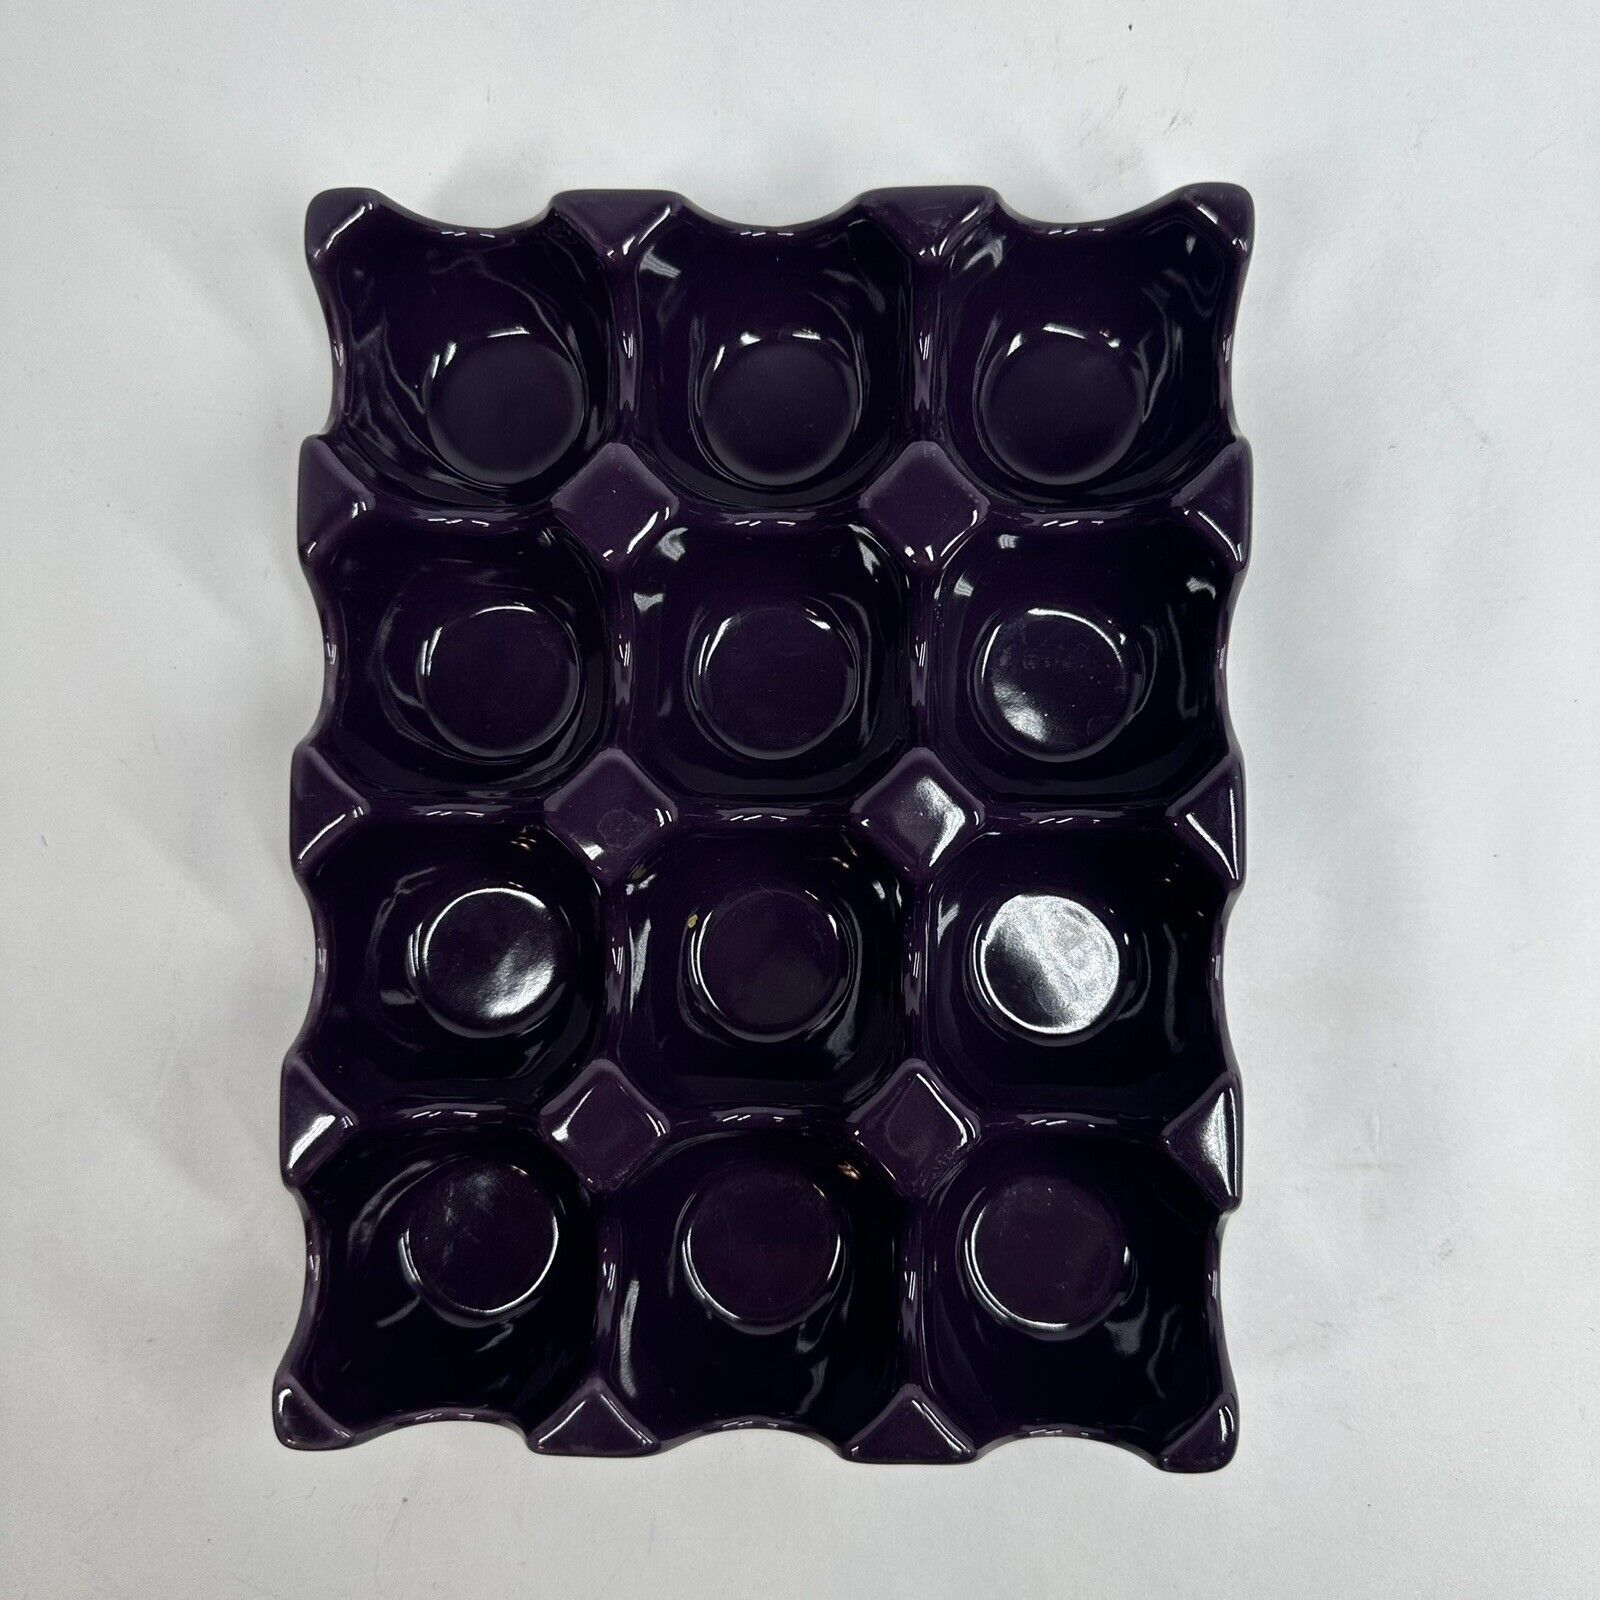 Rachael Ray Ceramic Purple Egg Holder Easter Eggs Refrigerator Storage 12 Egg